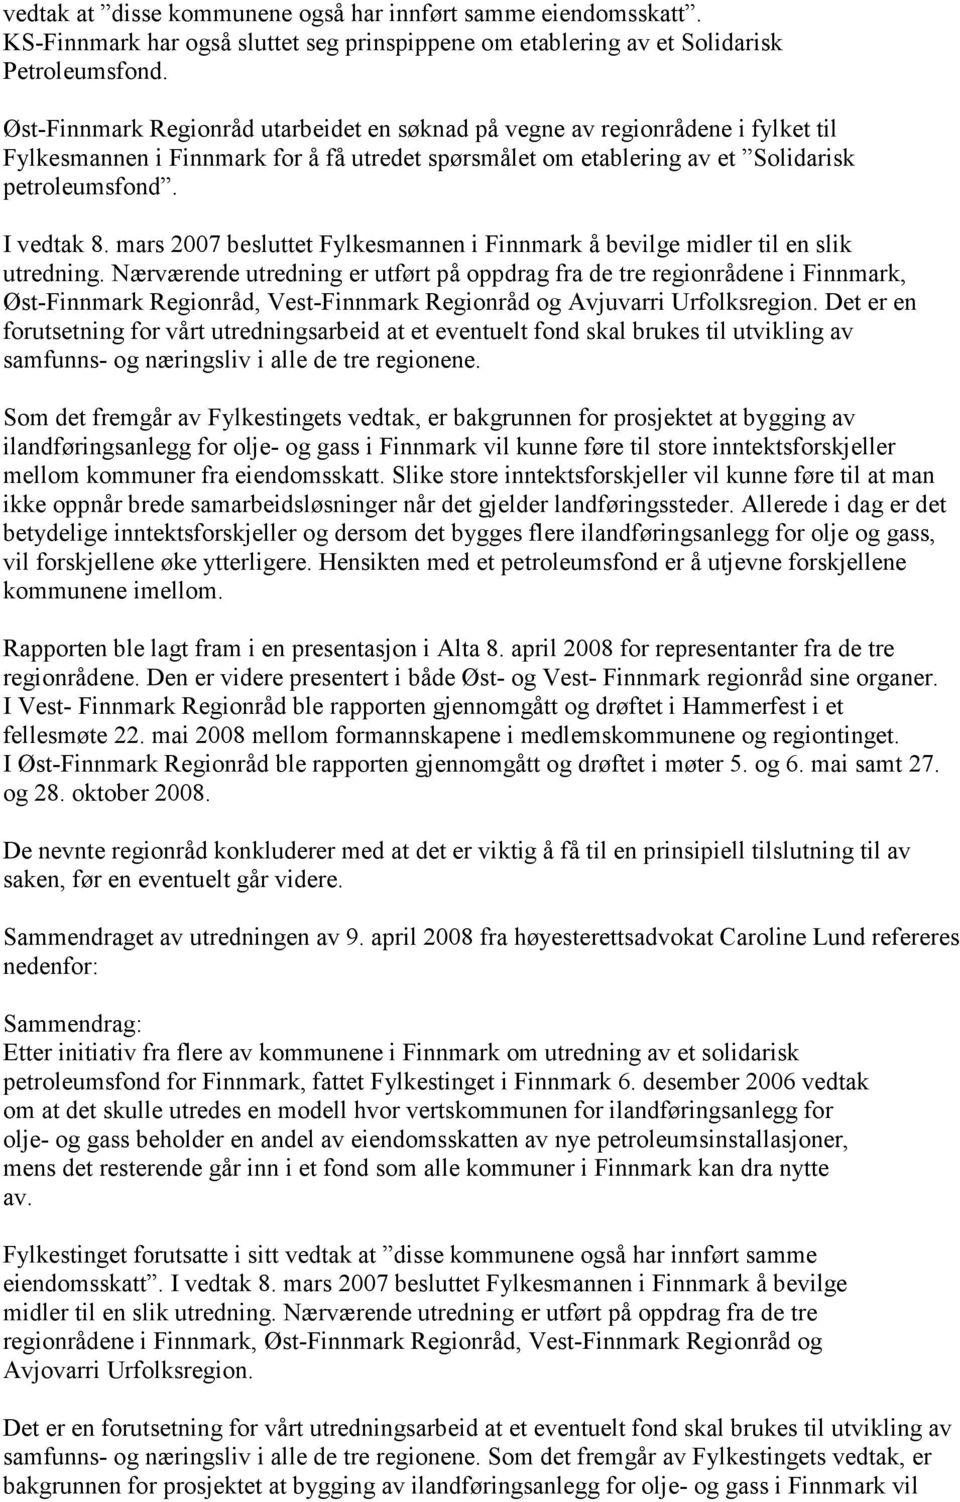 mars 2007 besluttet Fylkesmannen i Finnmark å bevilge midler til en slik utredning.